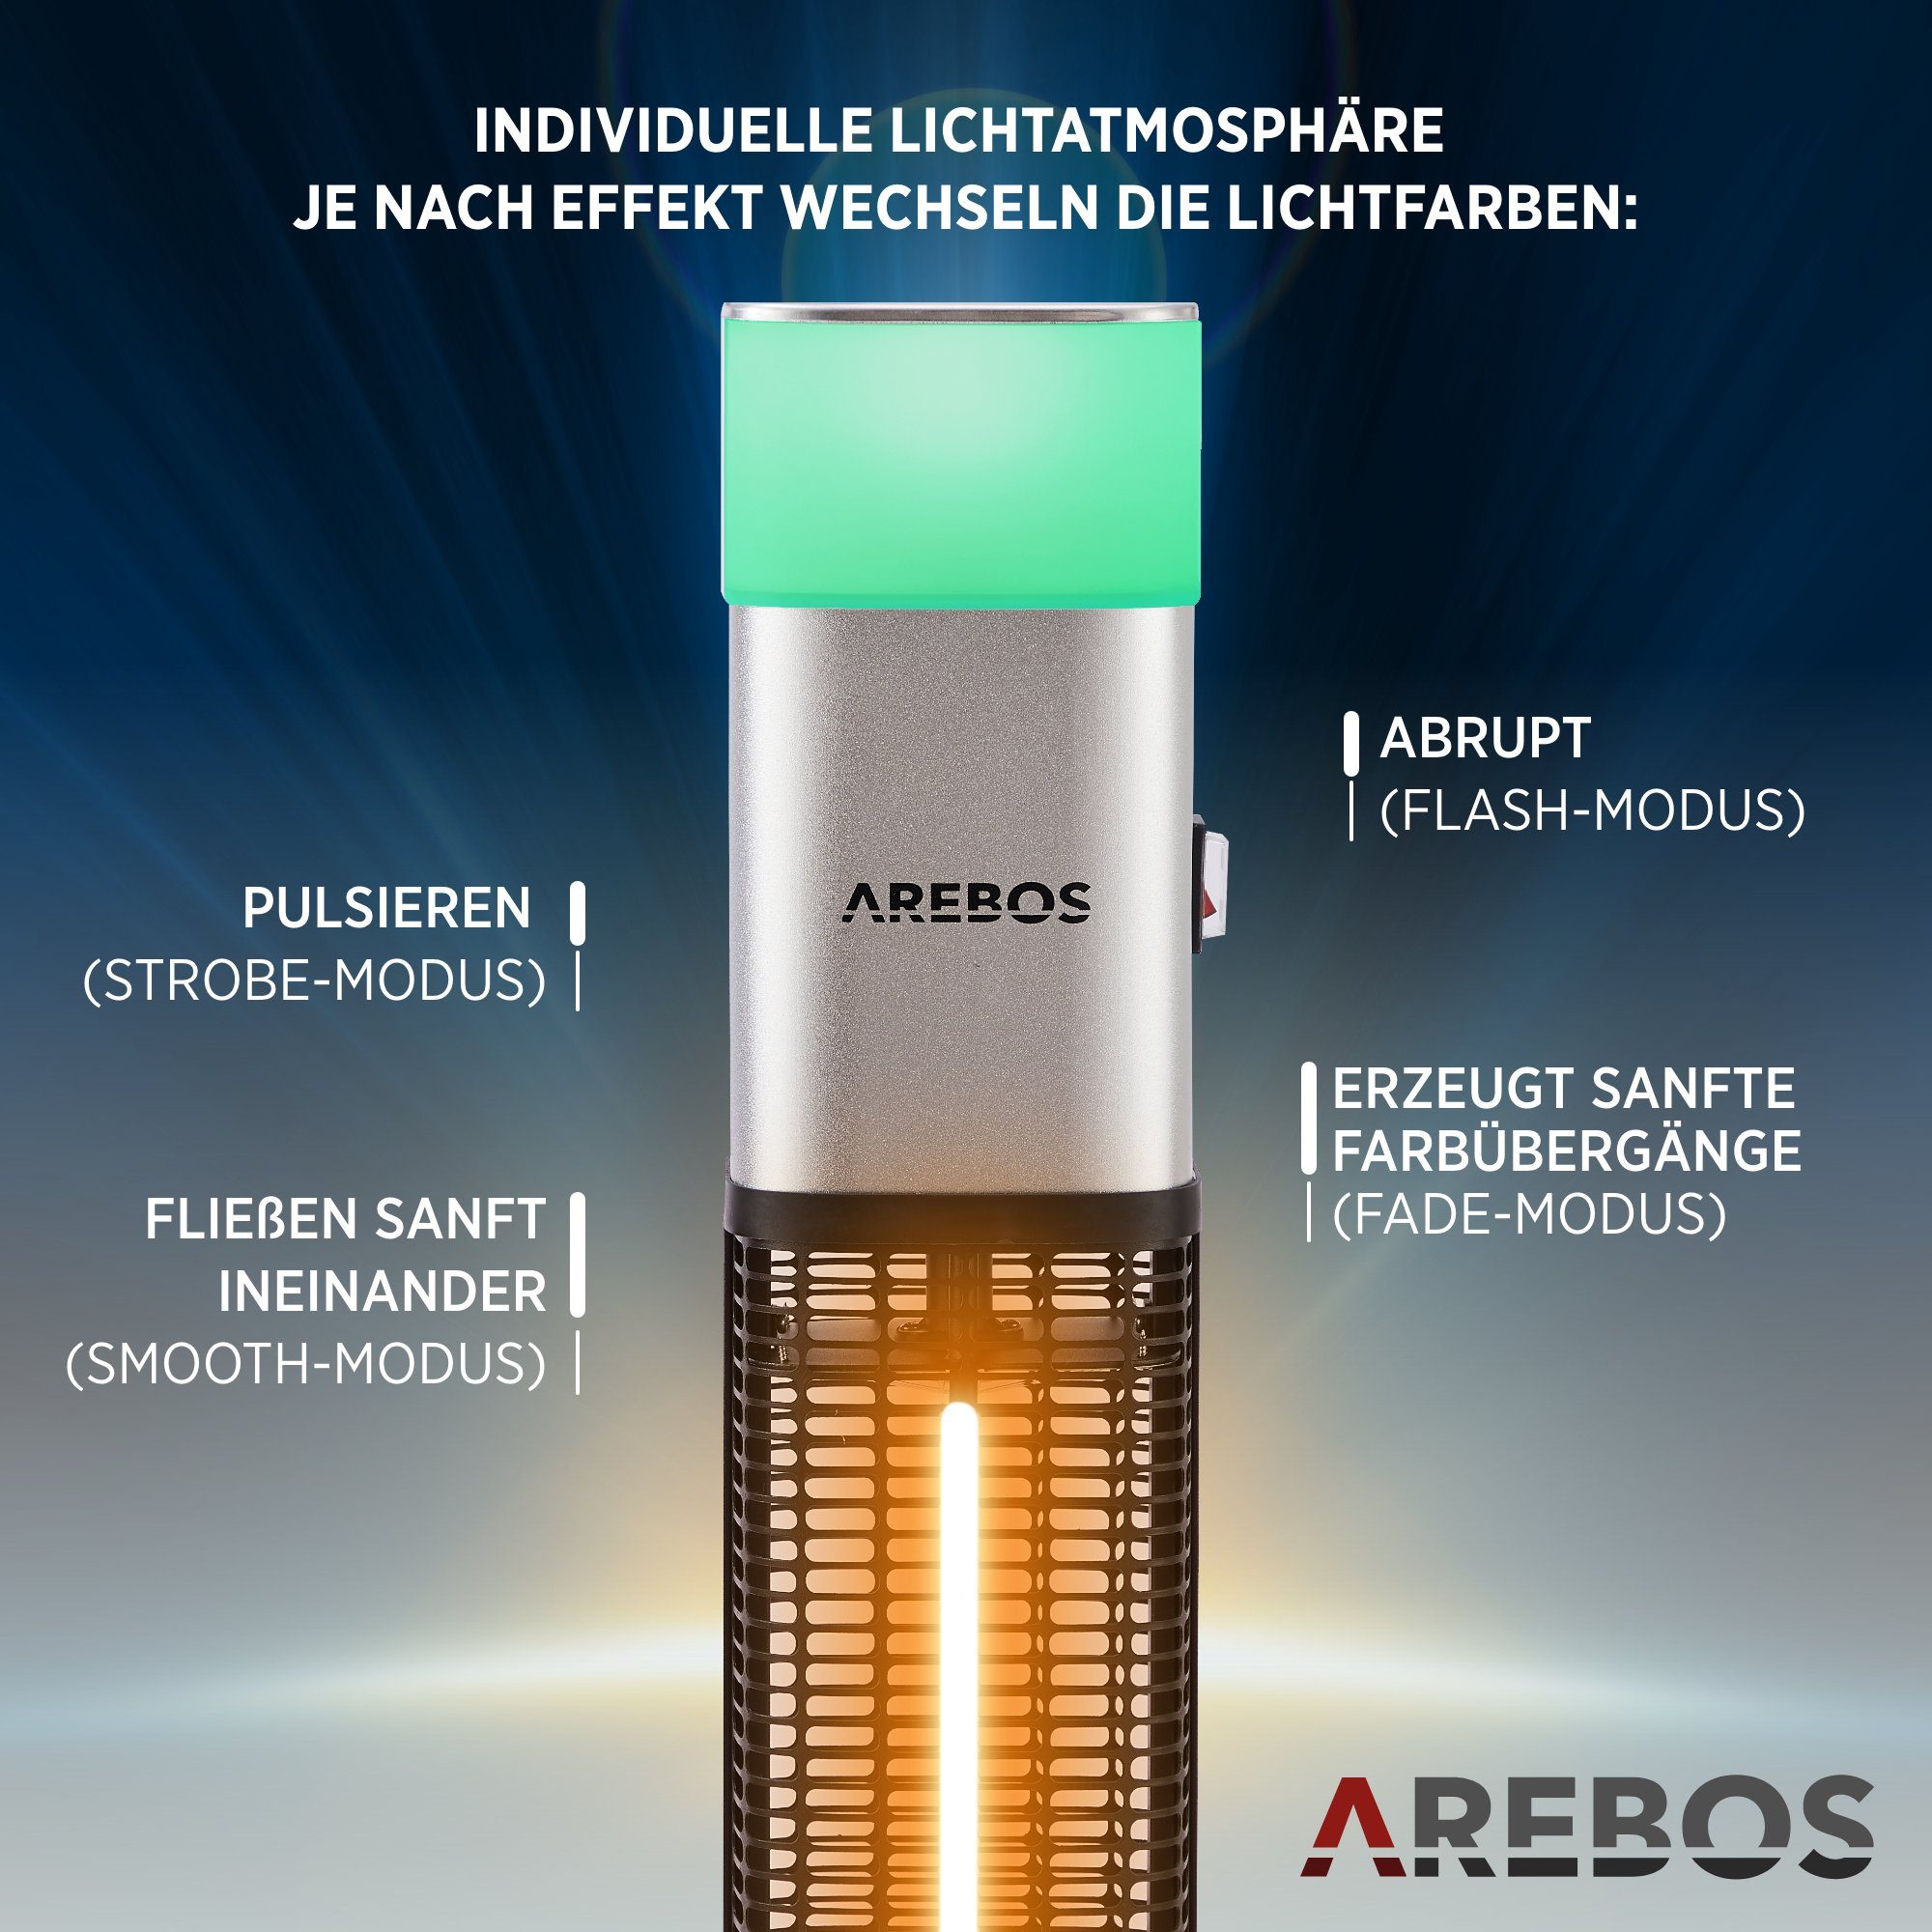 Watt Heizstrahler Stand, Fernbedienung, LED, Farben, silber inkl.16 LED-Licht mit Arebos Low-Glare-Technik 1500 Kipp-Abschalter, integrierte